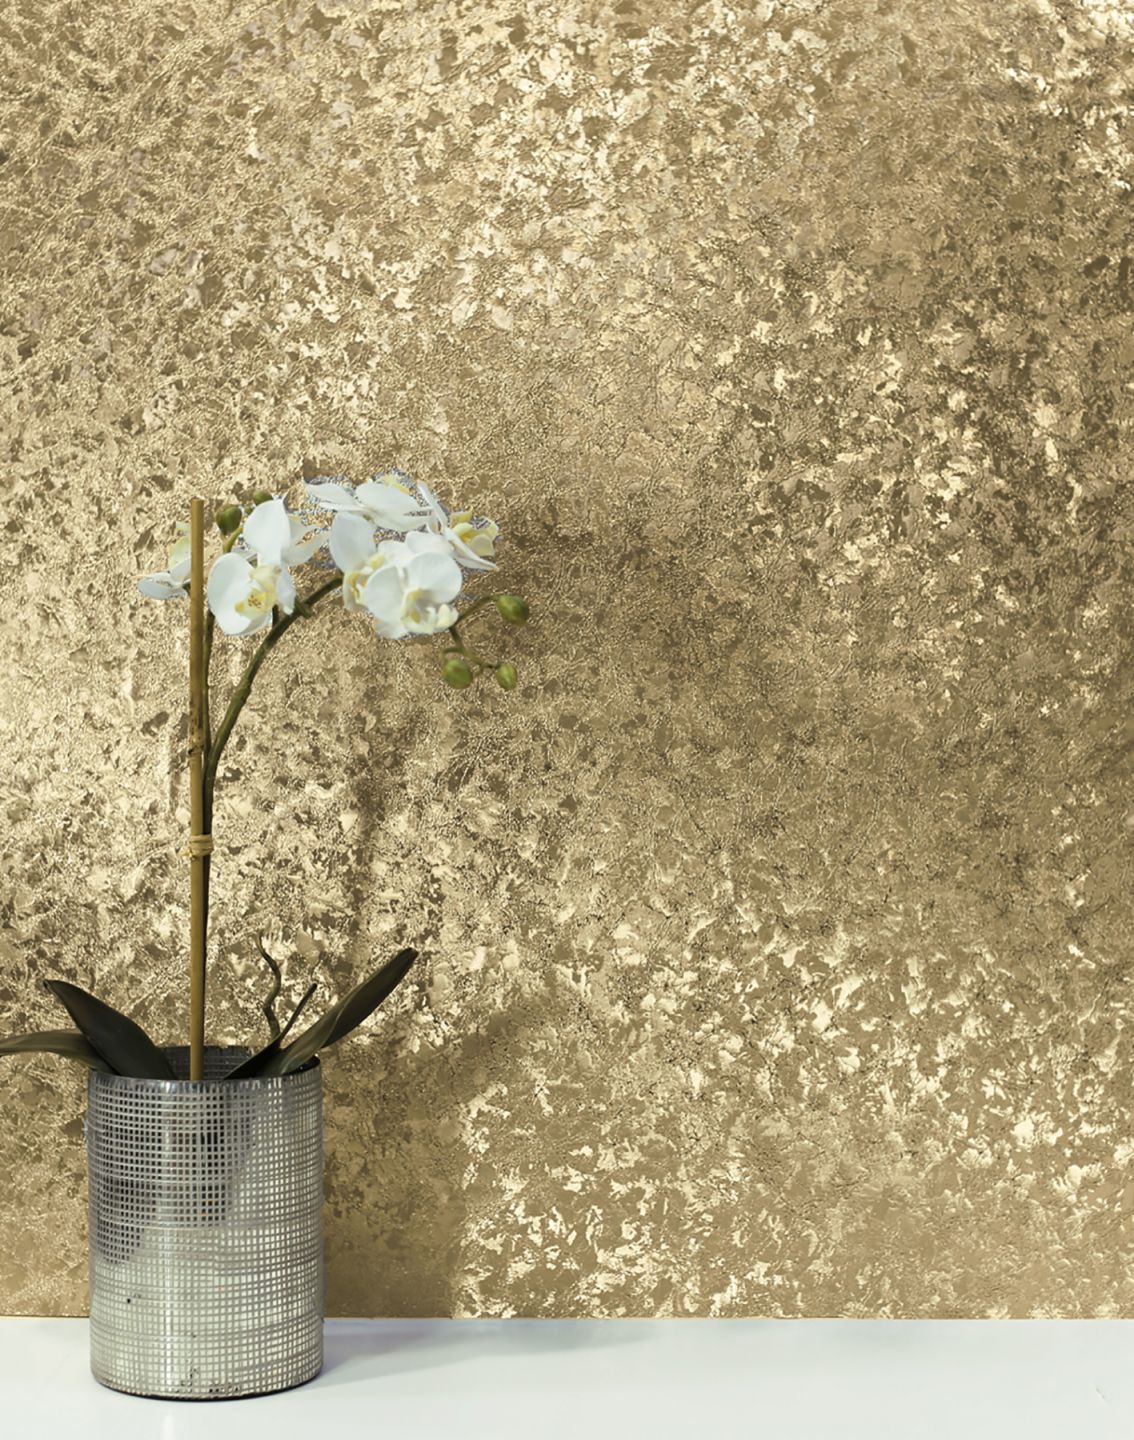 Papel pintado metalizado en dorado brillante en la pared detrás de un jarrón con una orquídea blanca